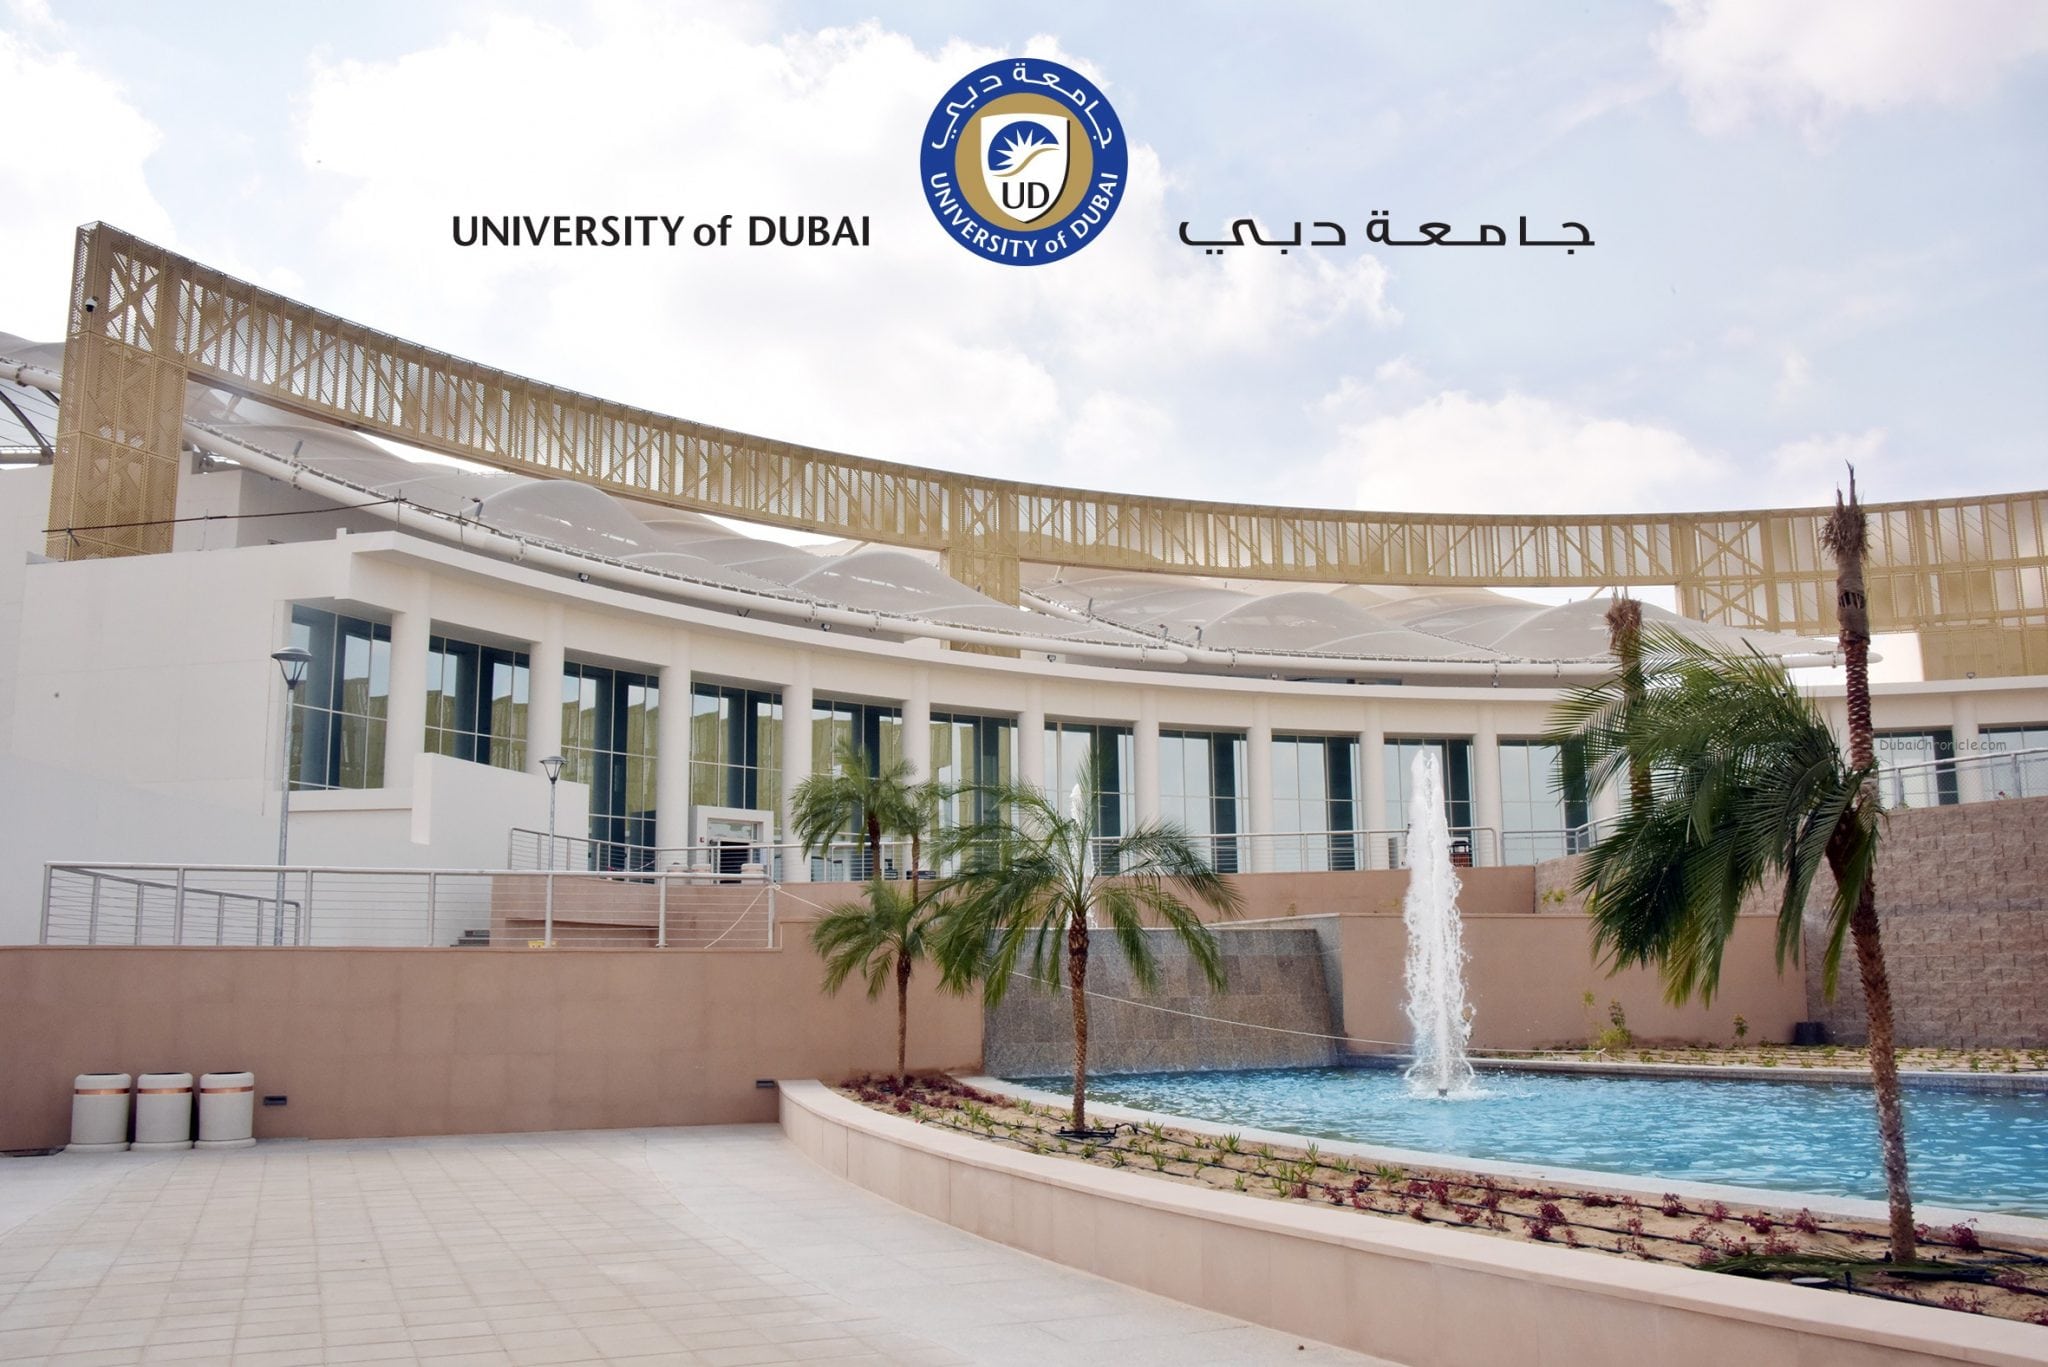 University of Dubai Top 10 Achievements